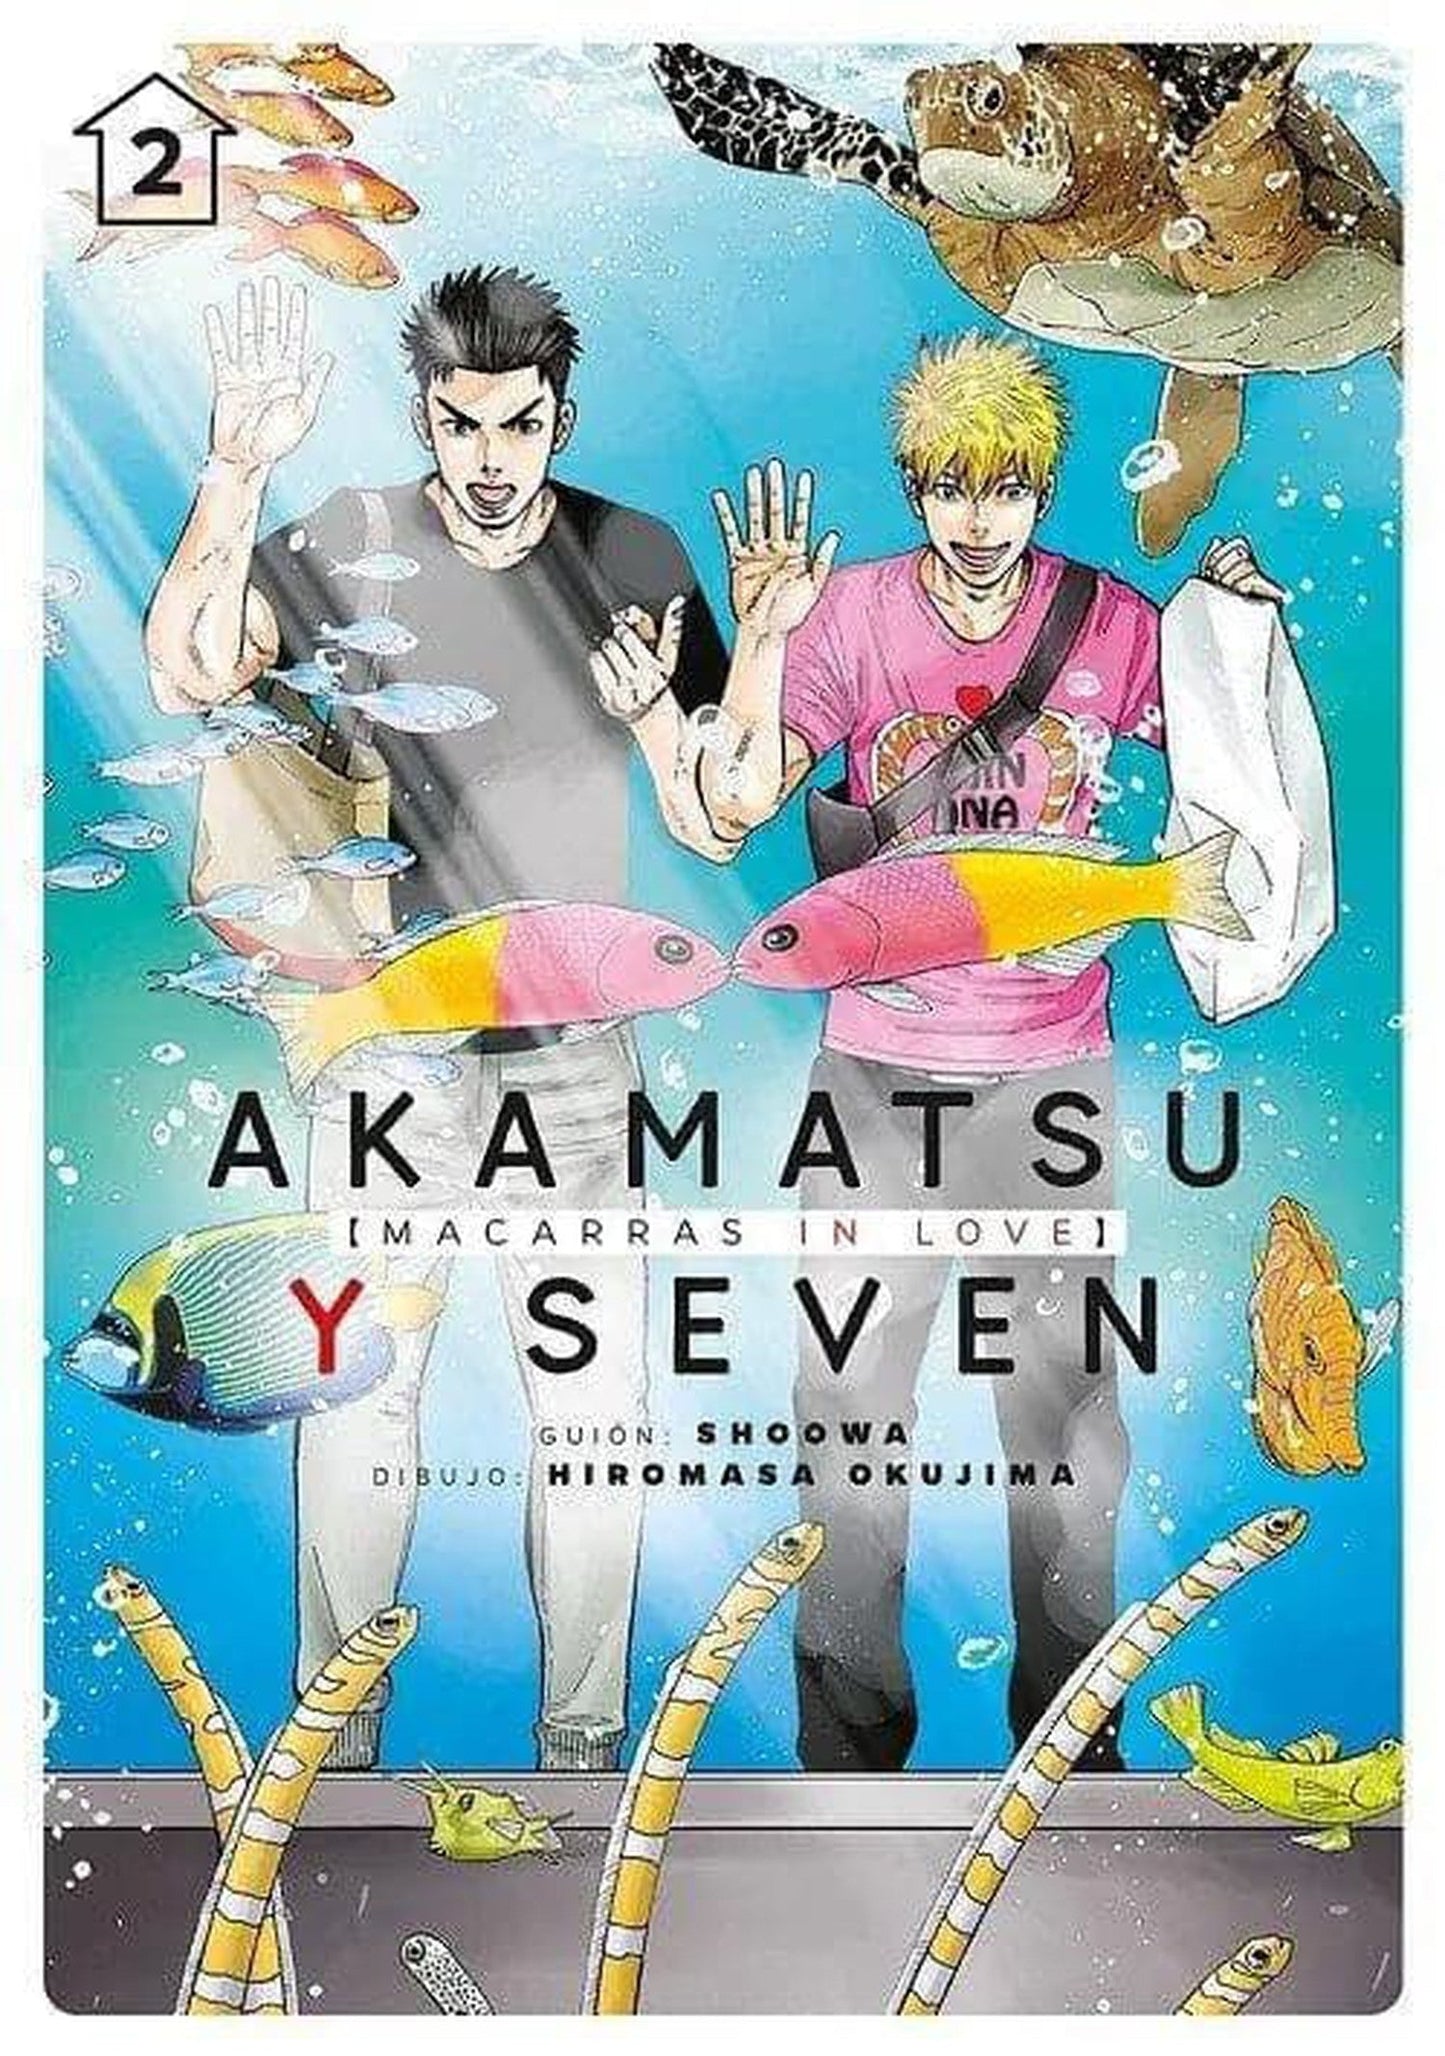 Akamatsu y Seven [Macarras In Love] Vol. 2 Tomodomo ENcuadrocomics